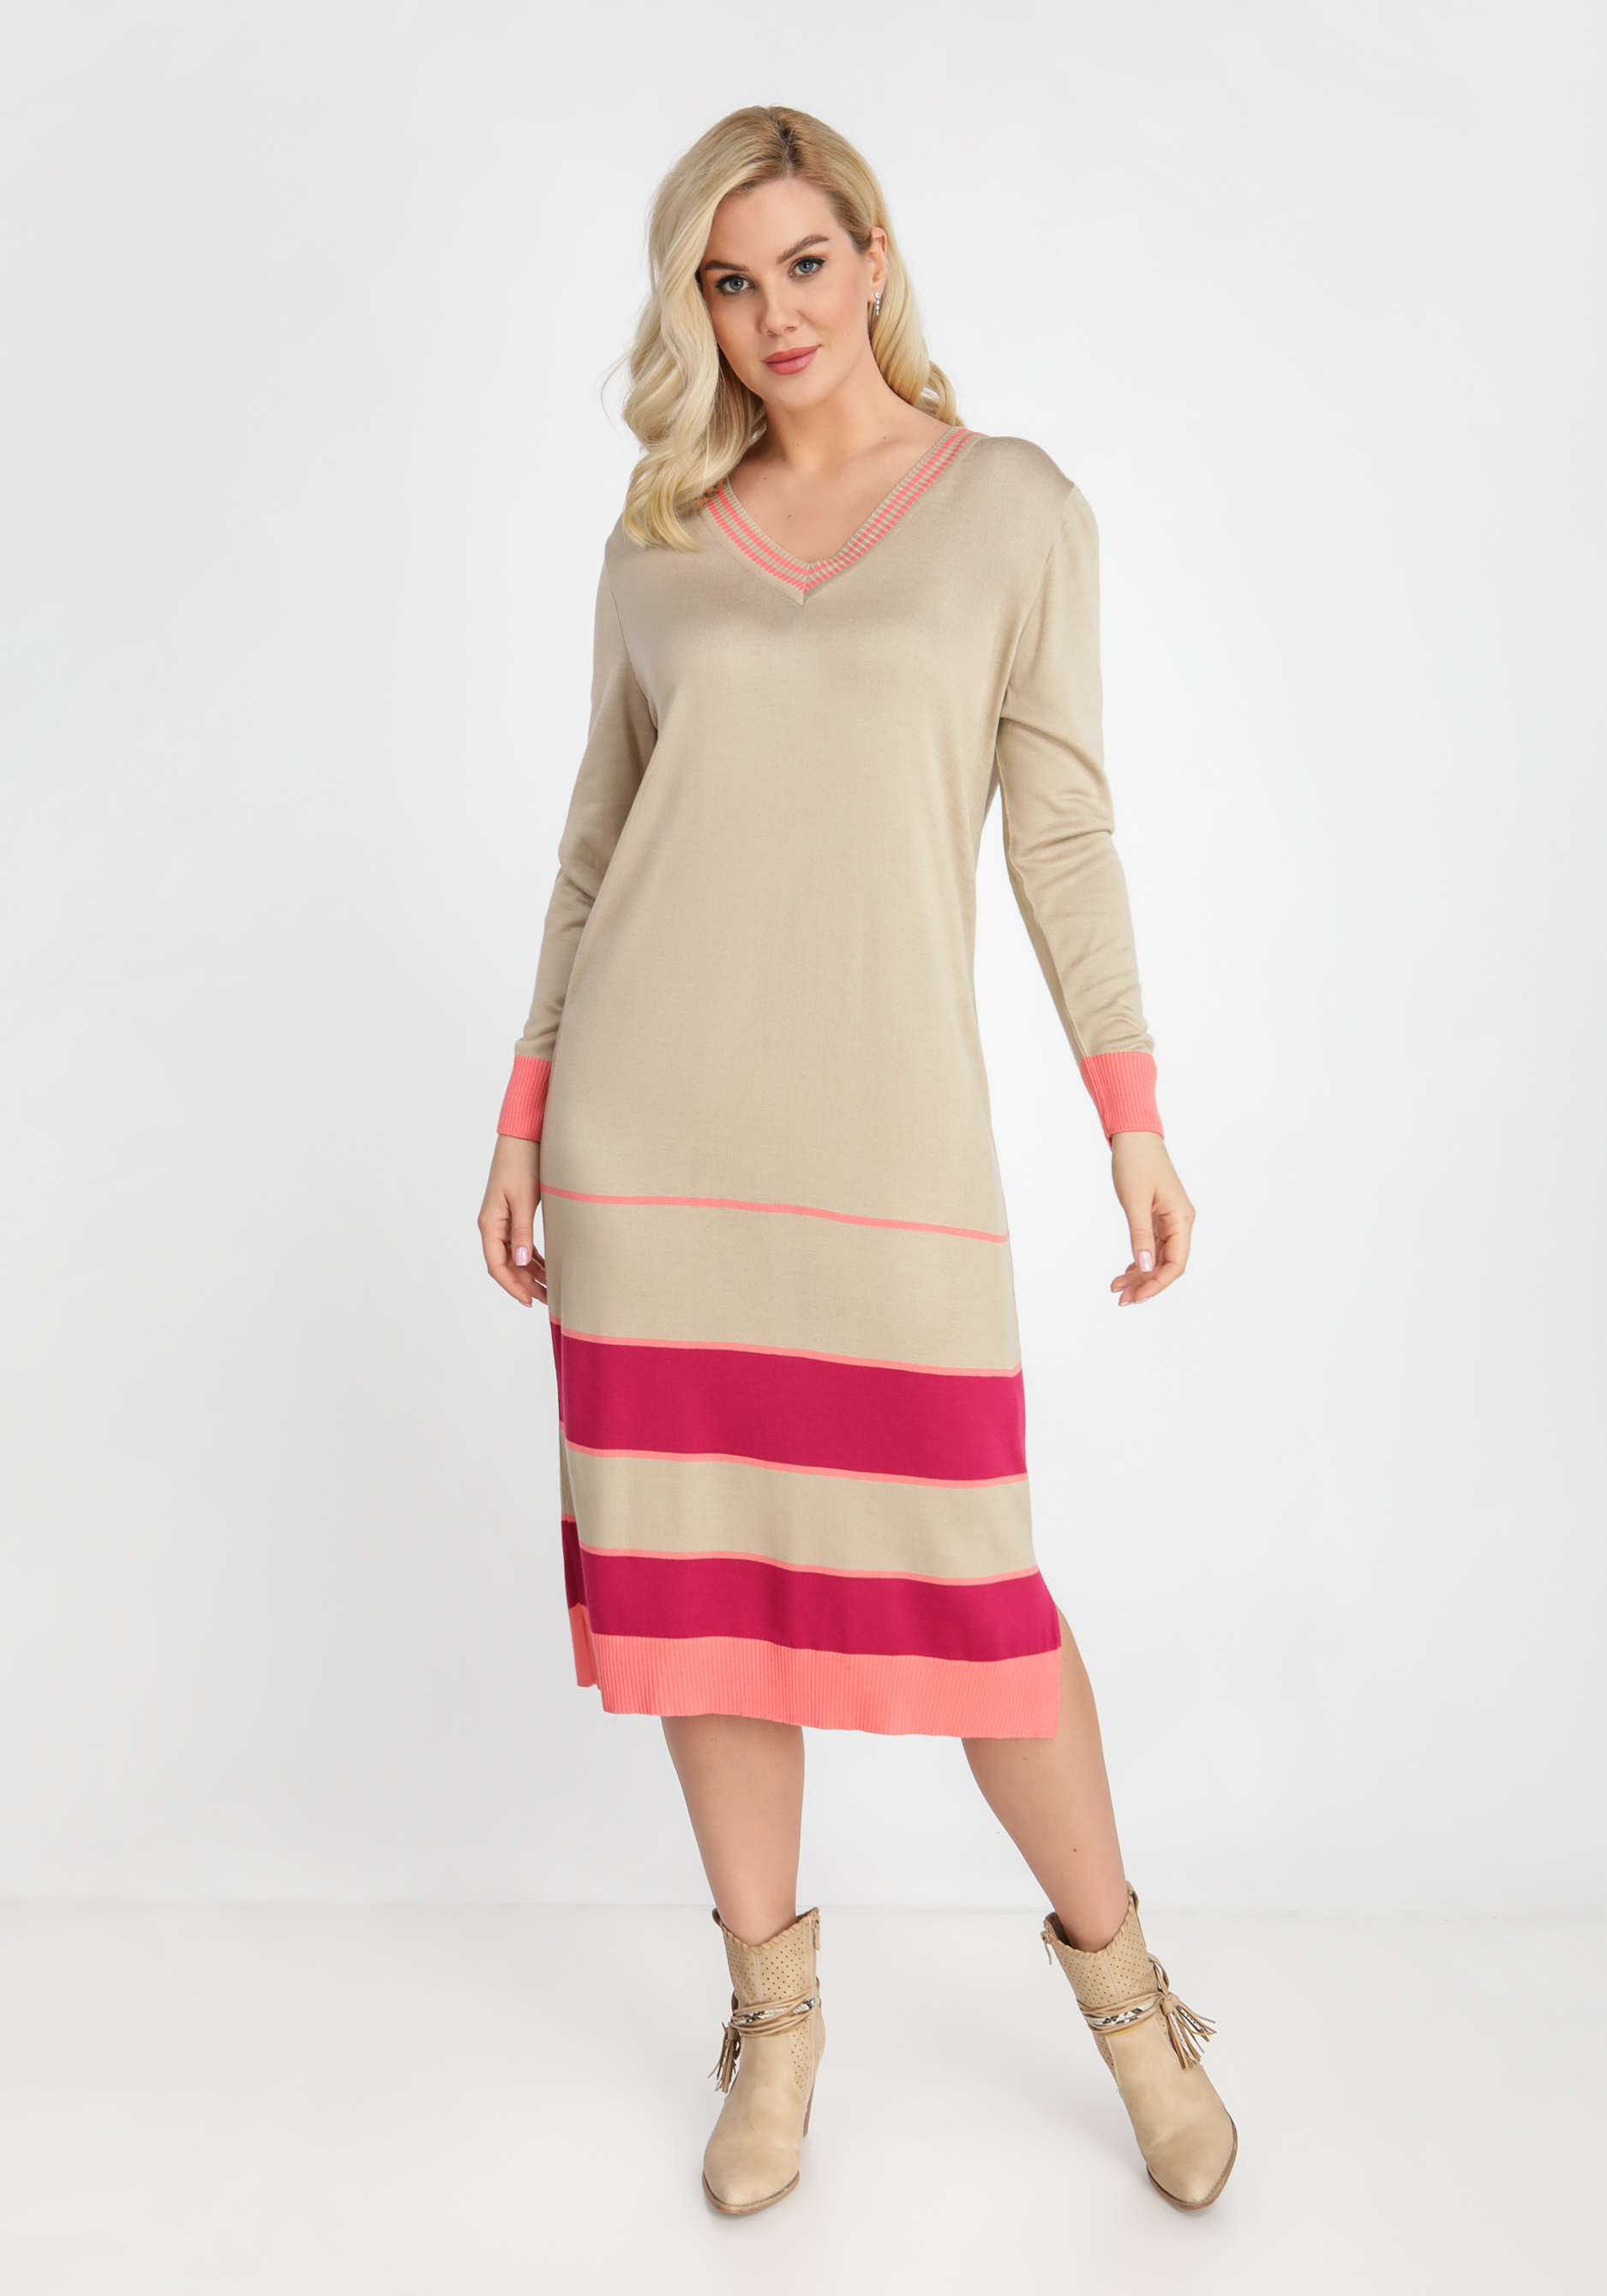 Платье с V-образным вырезом и полосками Vivawool, размер 48, цвет светло-бежевый - фото 2